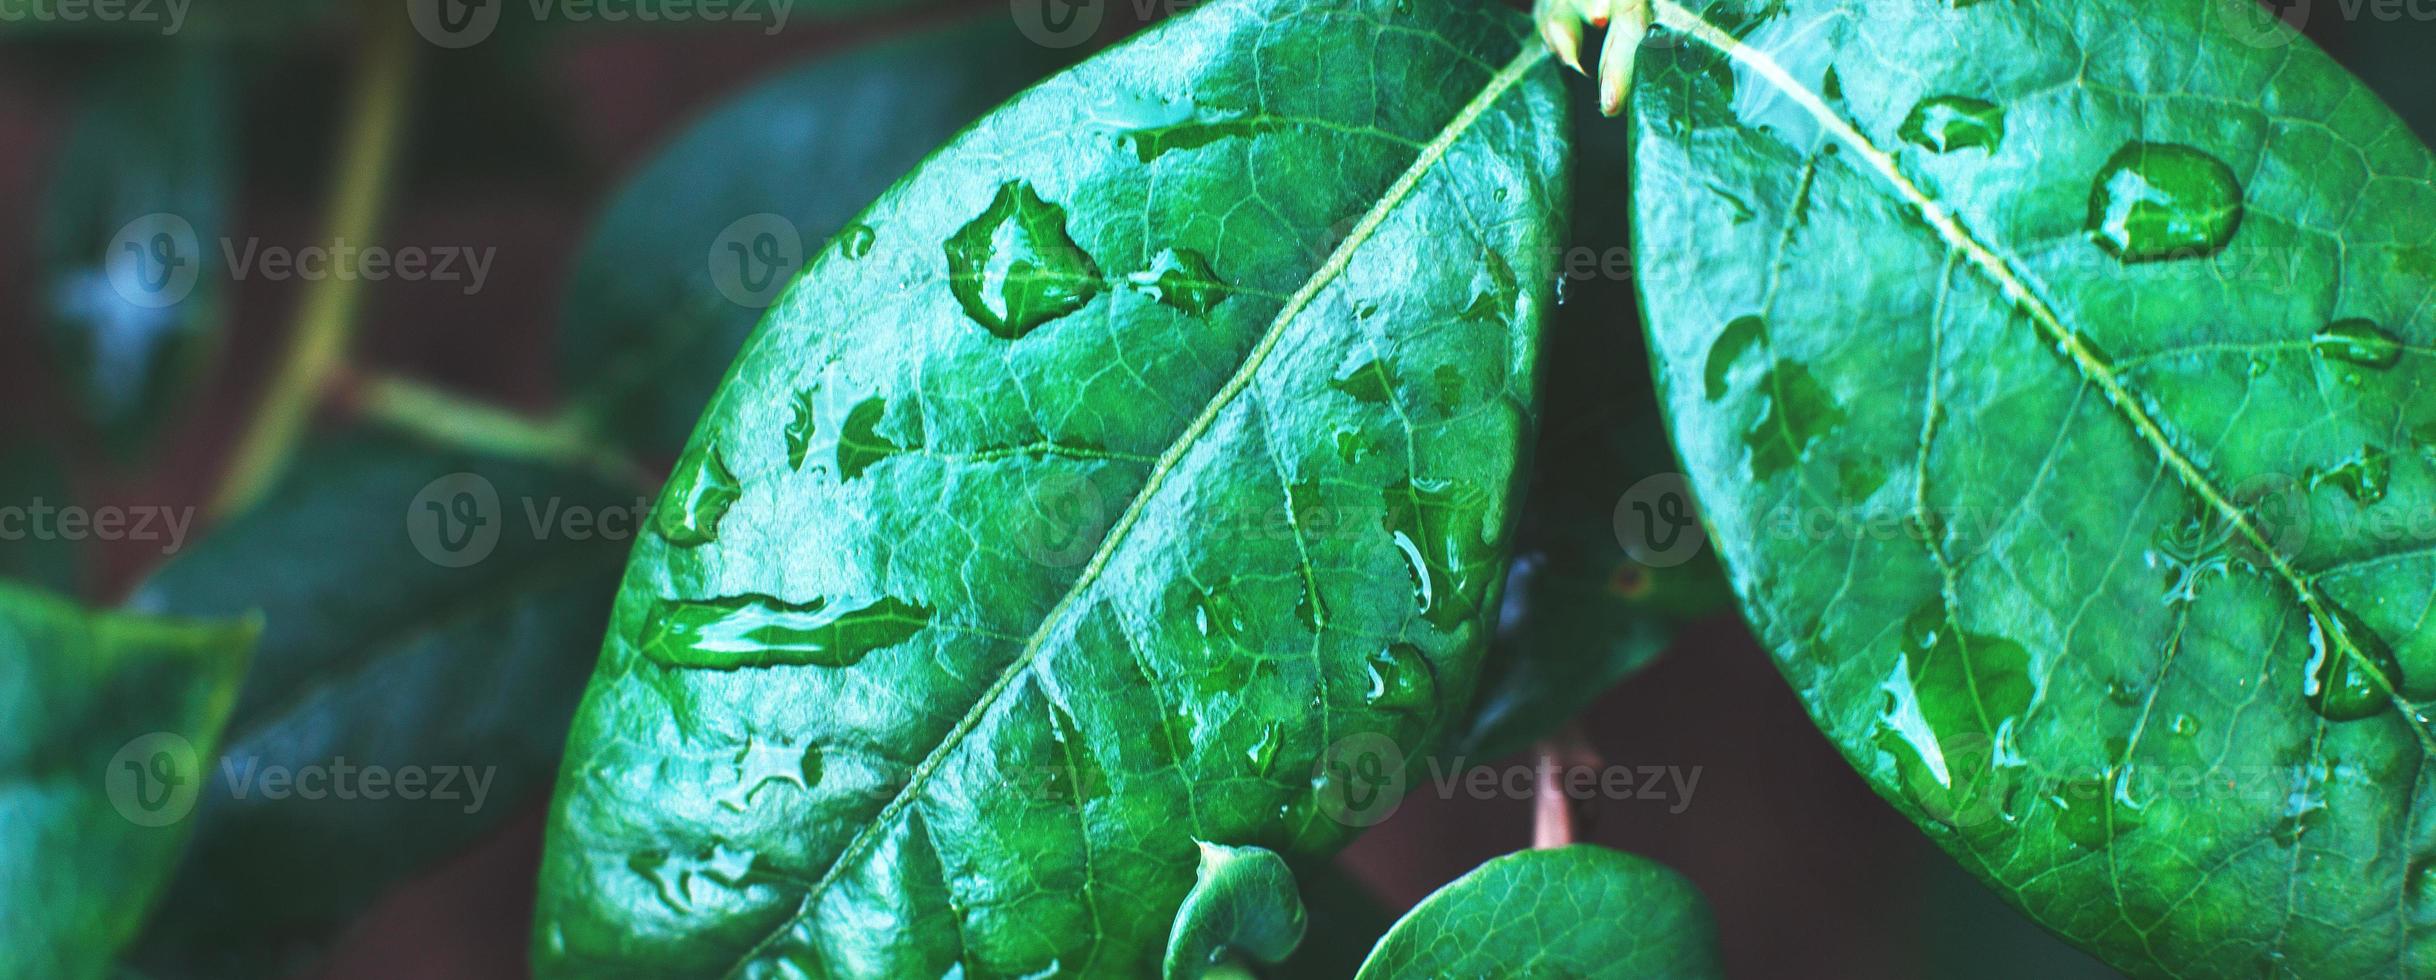 arbustos de arándanos verdes húmedos con una gota de agua de cerca. fondo de hojas naturales. bandera foto